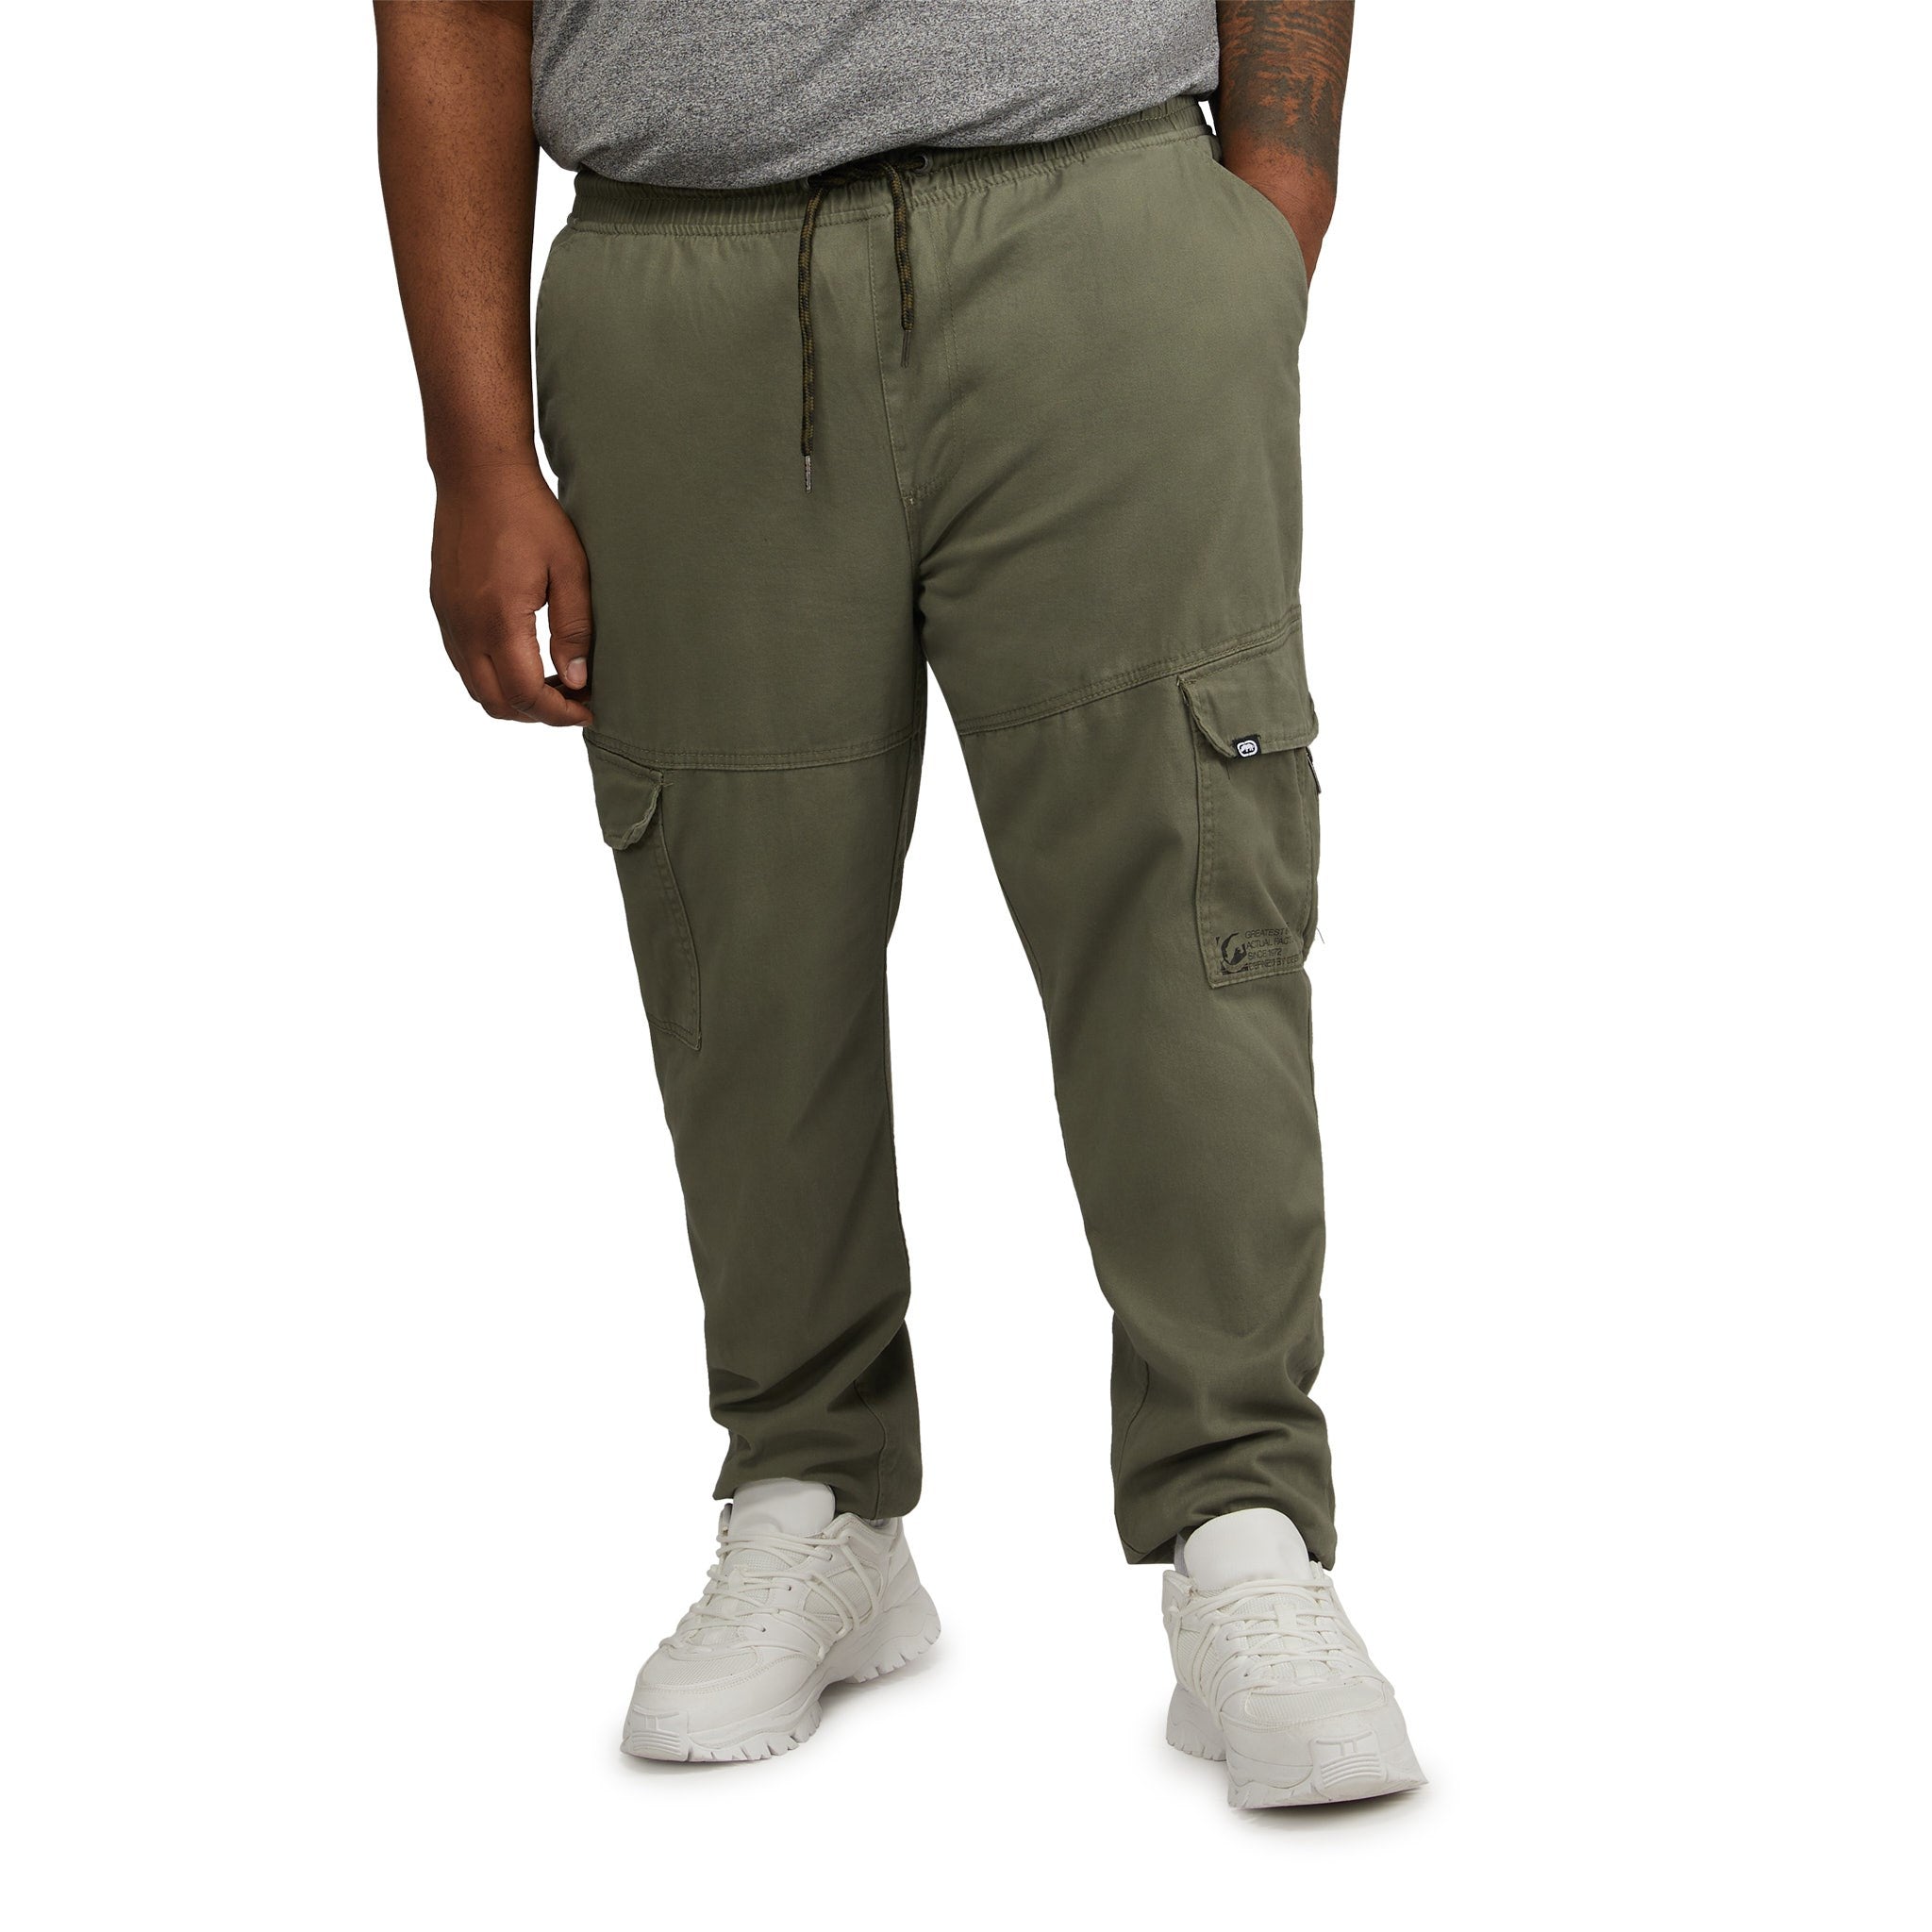 Buy Olive Green Trousers & Pants for Men by ECKO UNLTD Online